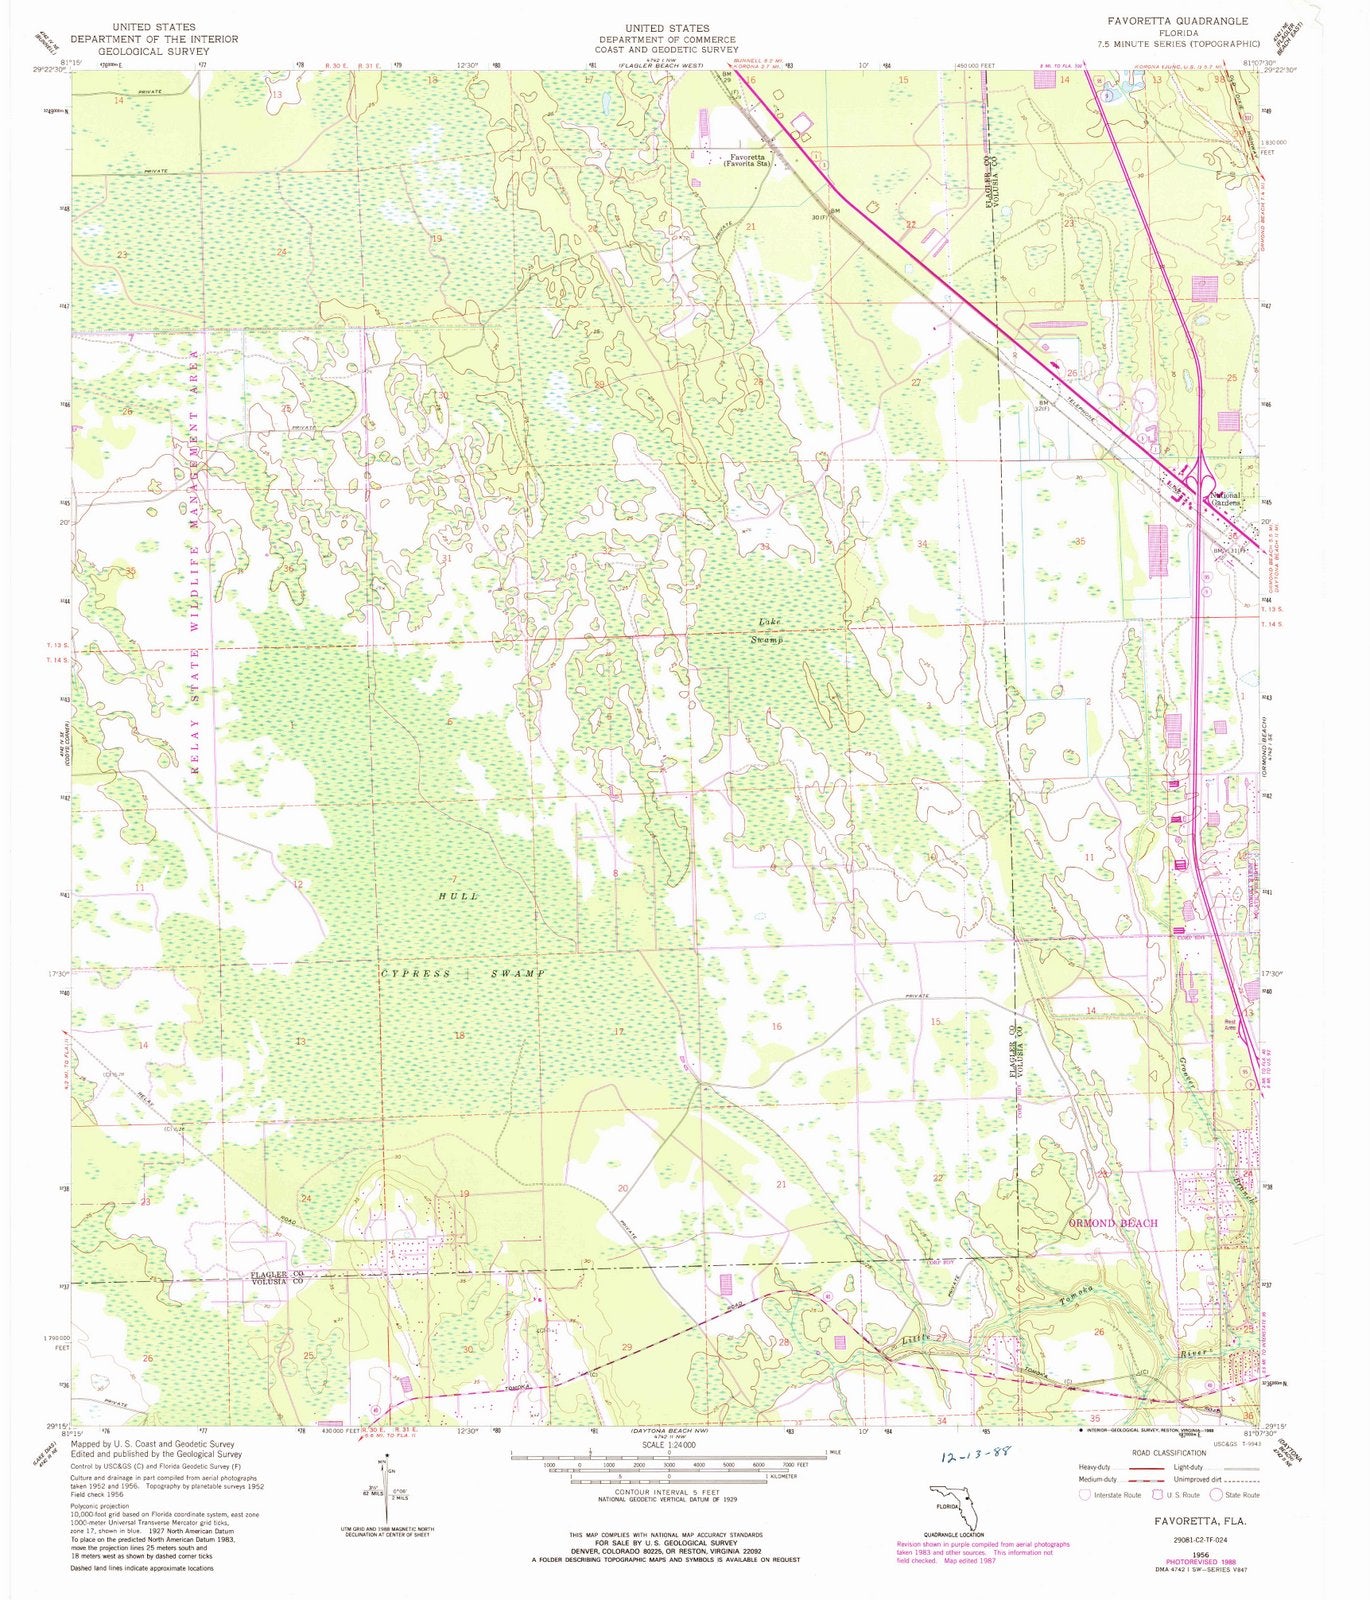 1956 Favoretta, FL - Florida - USGS Topographic Map